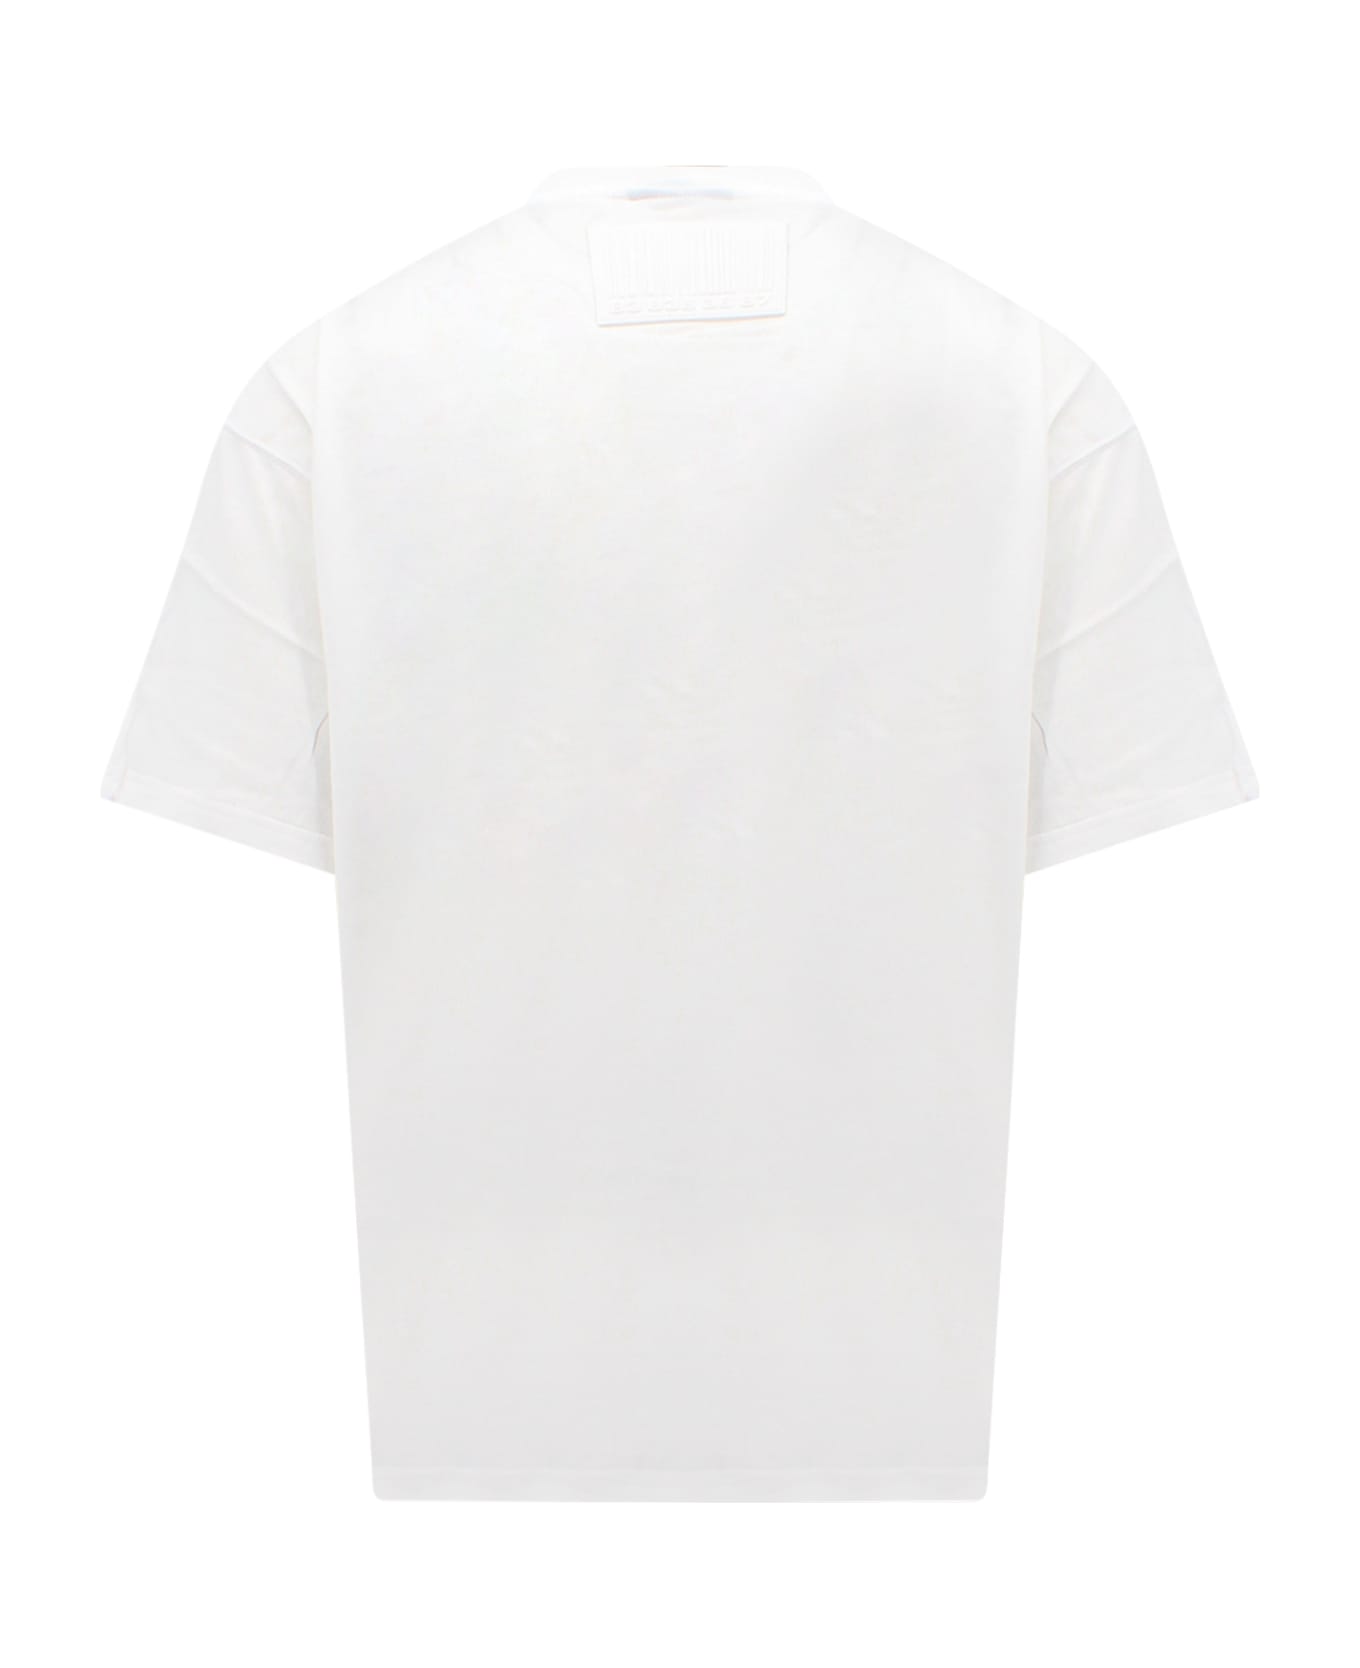 VTMNTS T-shirt - White シャツ